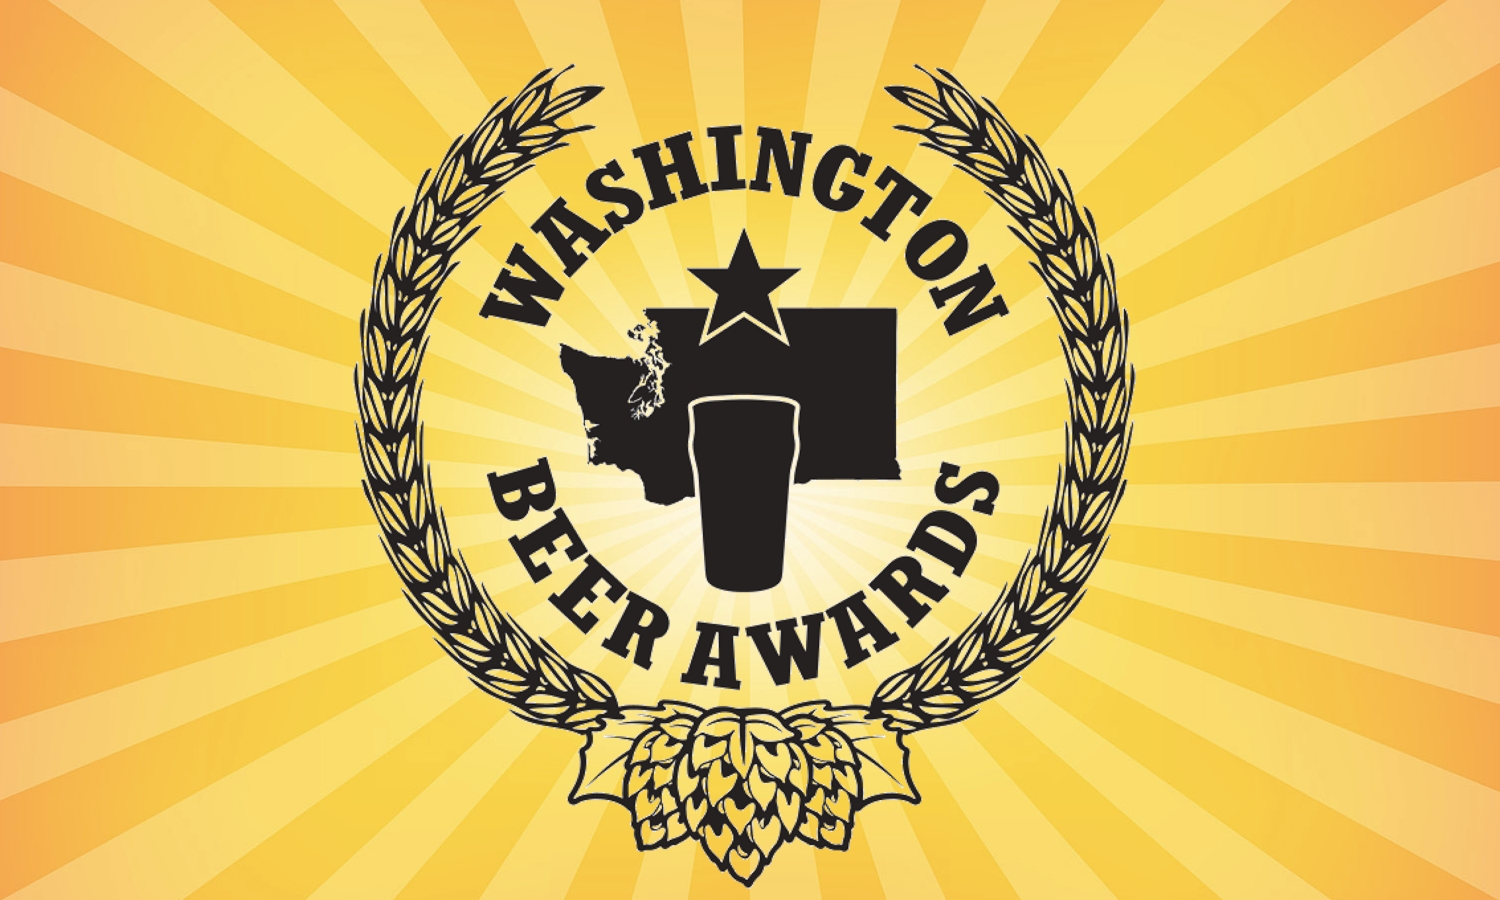 Washington Beer Awards 2019